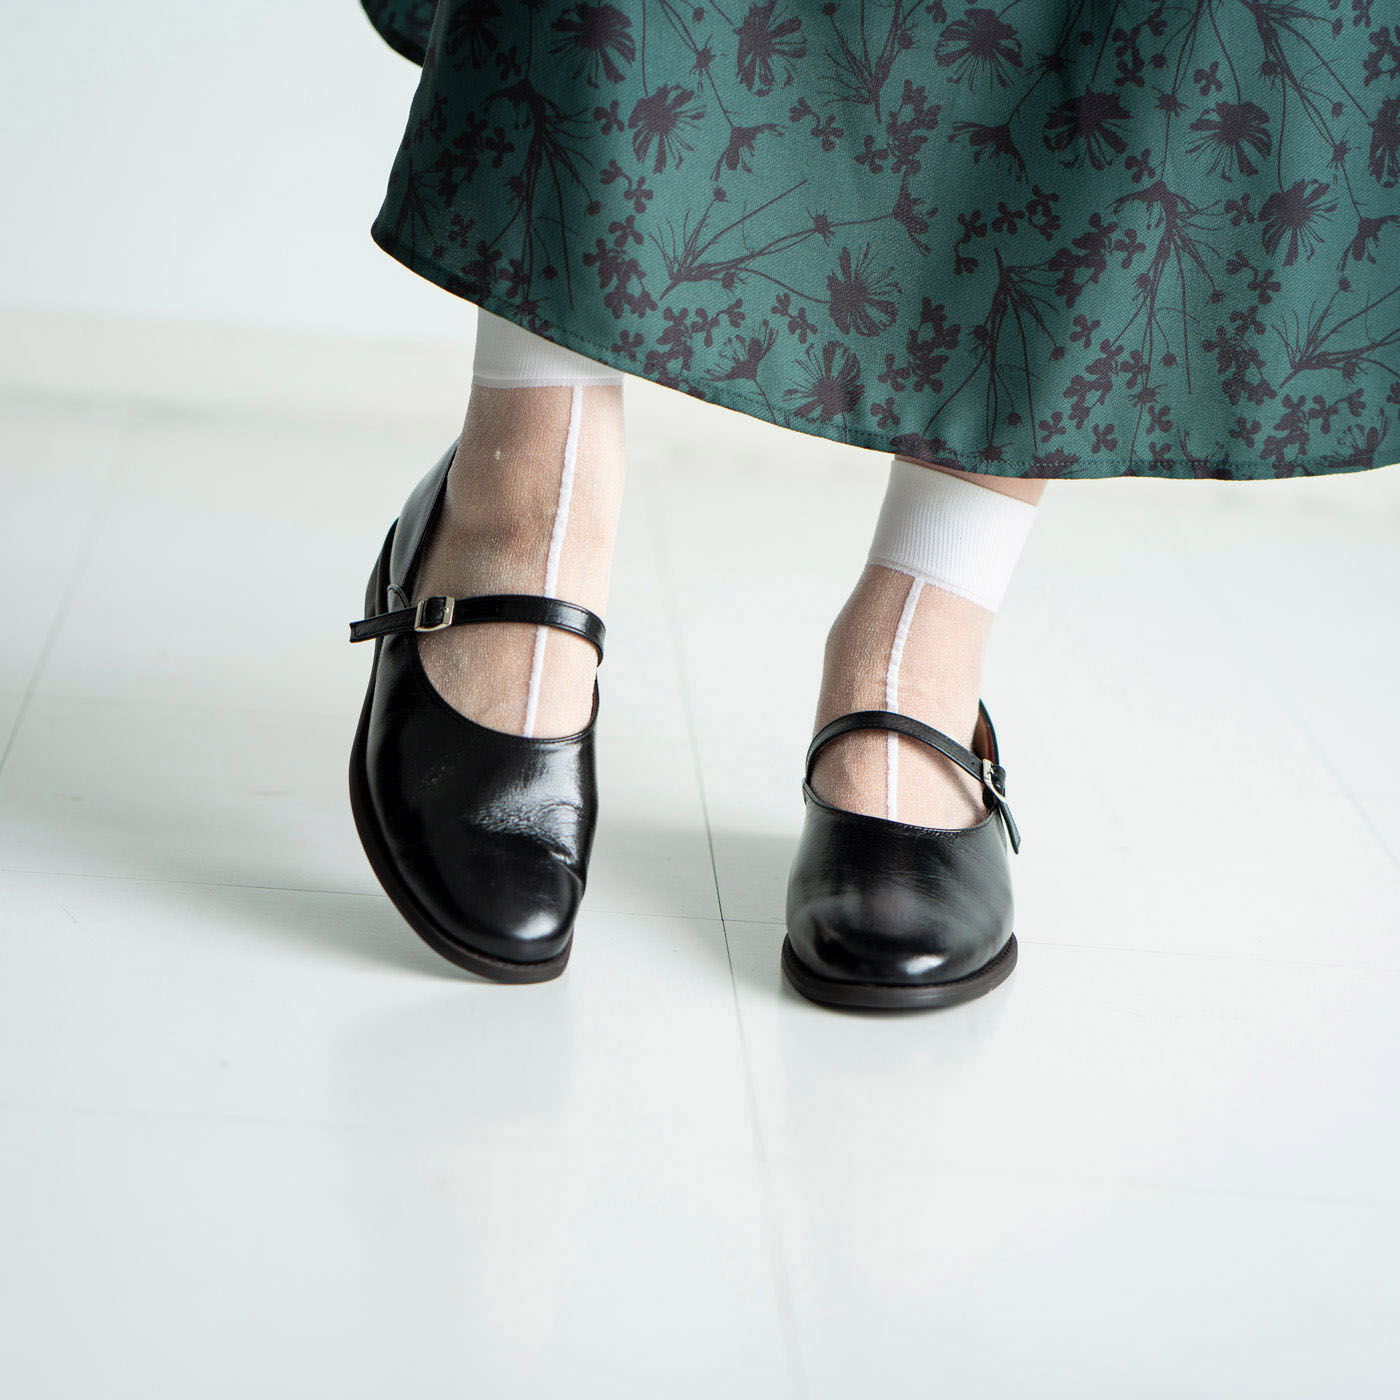 ＆Stories|靴デザイナーの理想で作った 職人本革のレジェルテシューズ〈ブラック〉|どこから見ても美しい、端正な表情が魅力のシューズ。